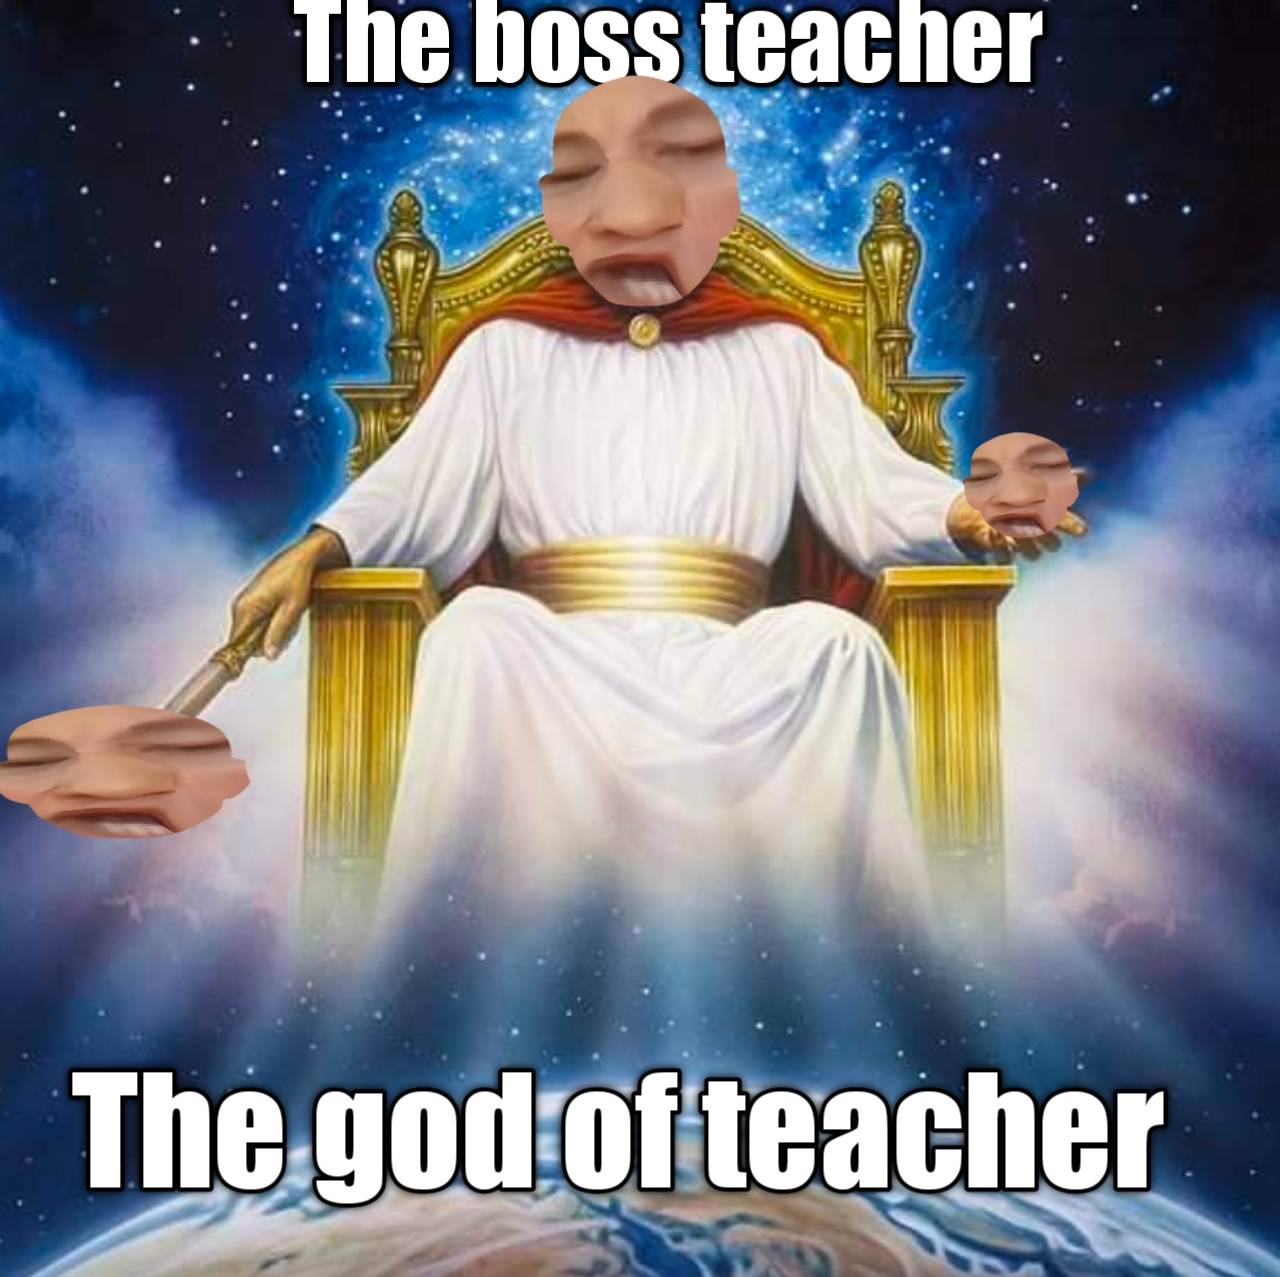 High Quality Boss teacher.exe Blank Meme Template